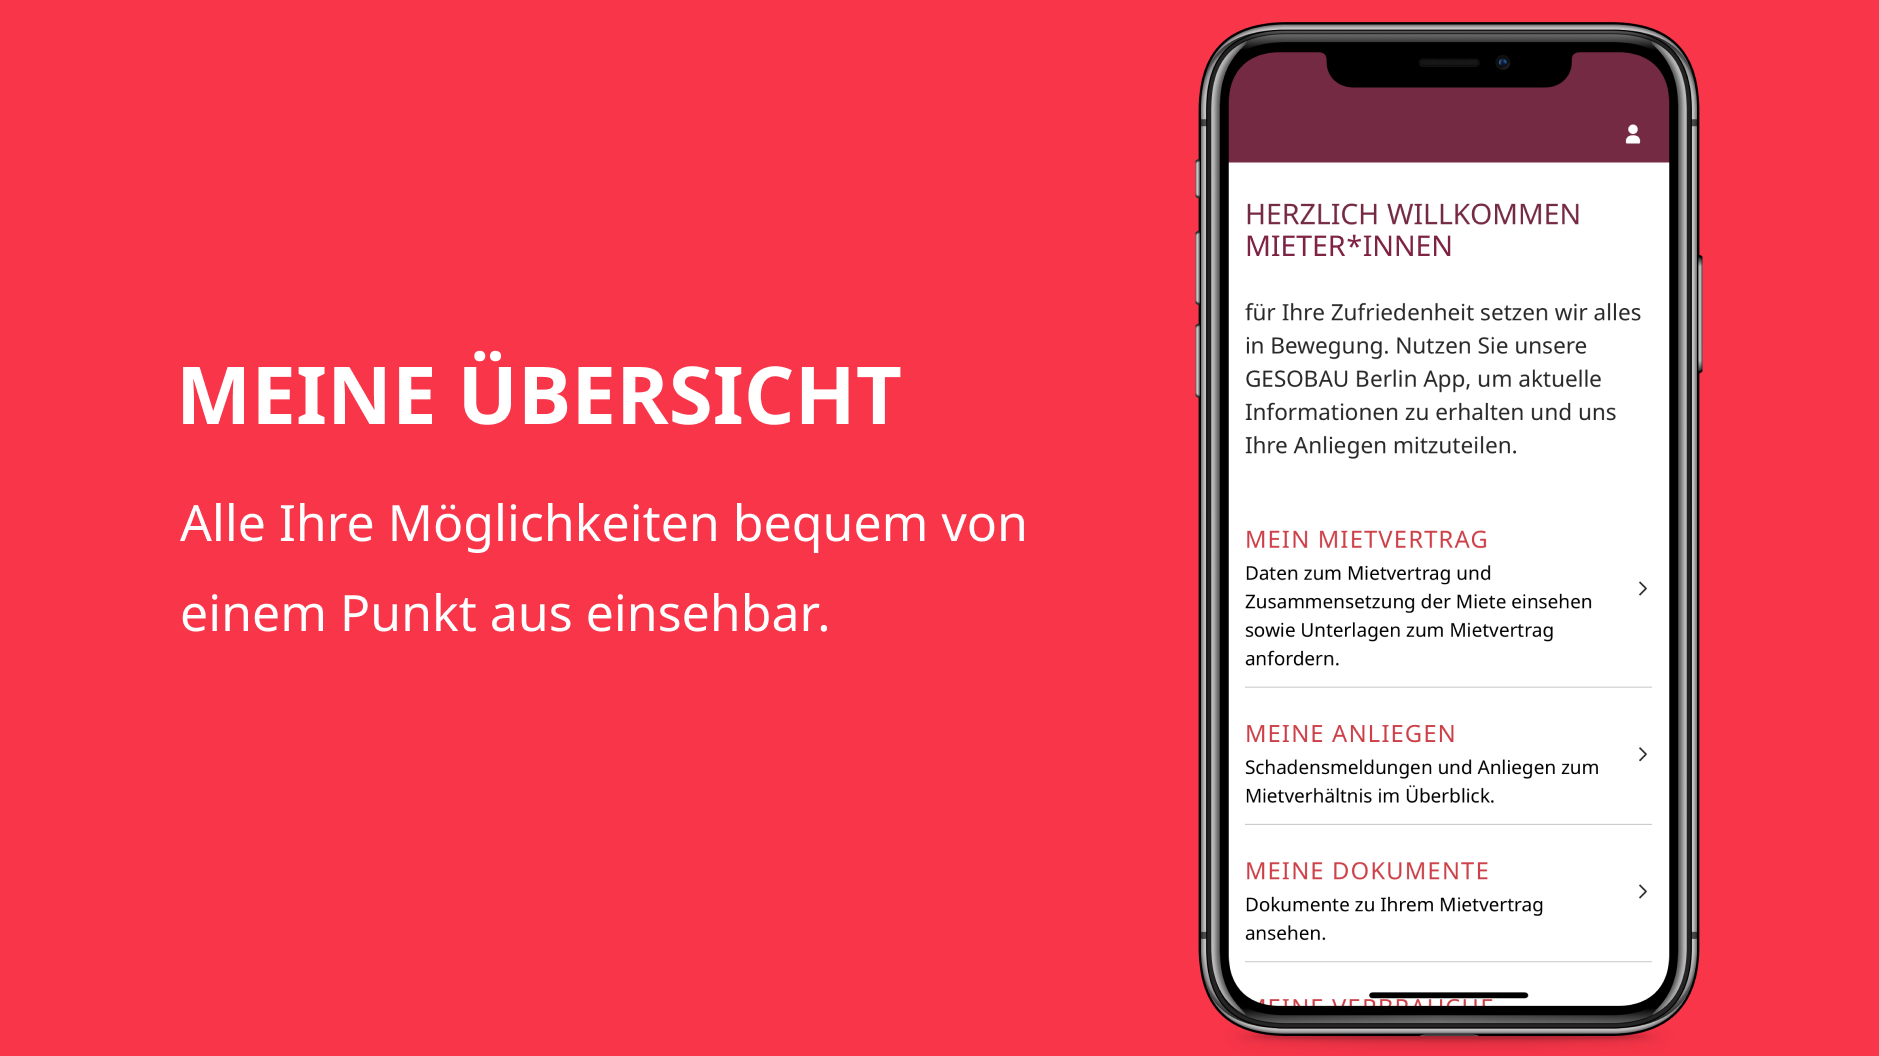 Grafik zeigt die Startseite der GESOBAU Berlin App "Meine Übersicht".